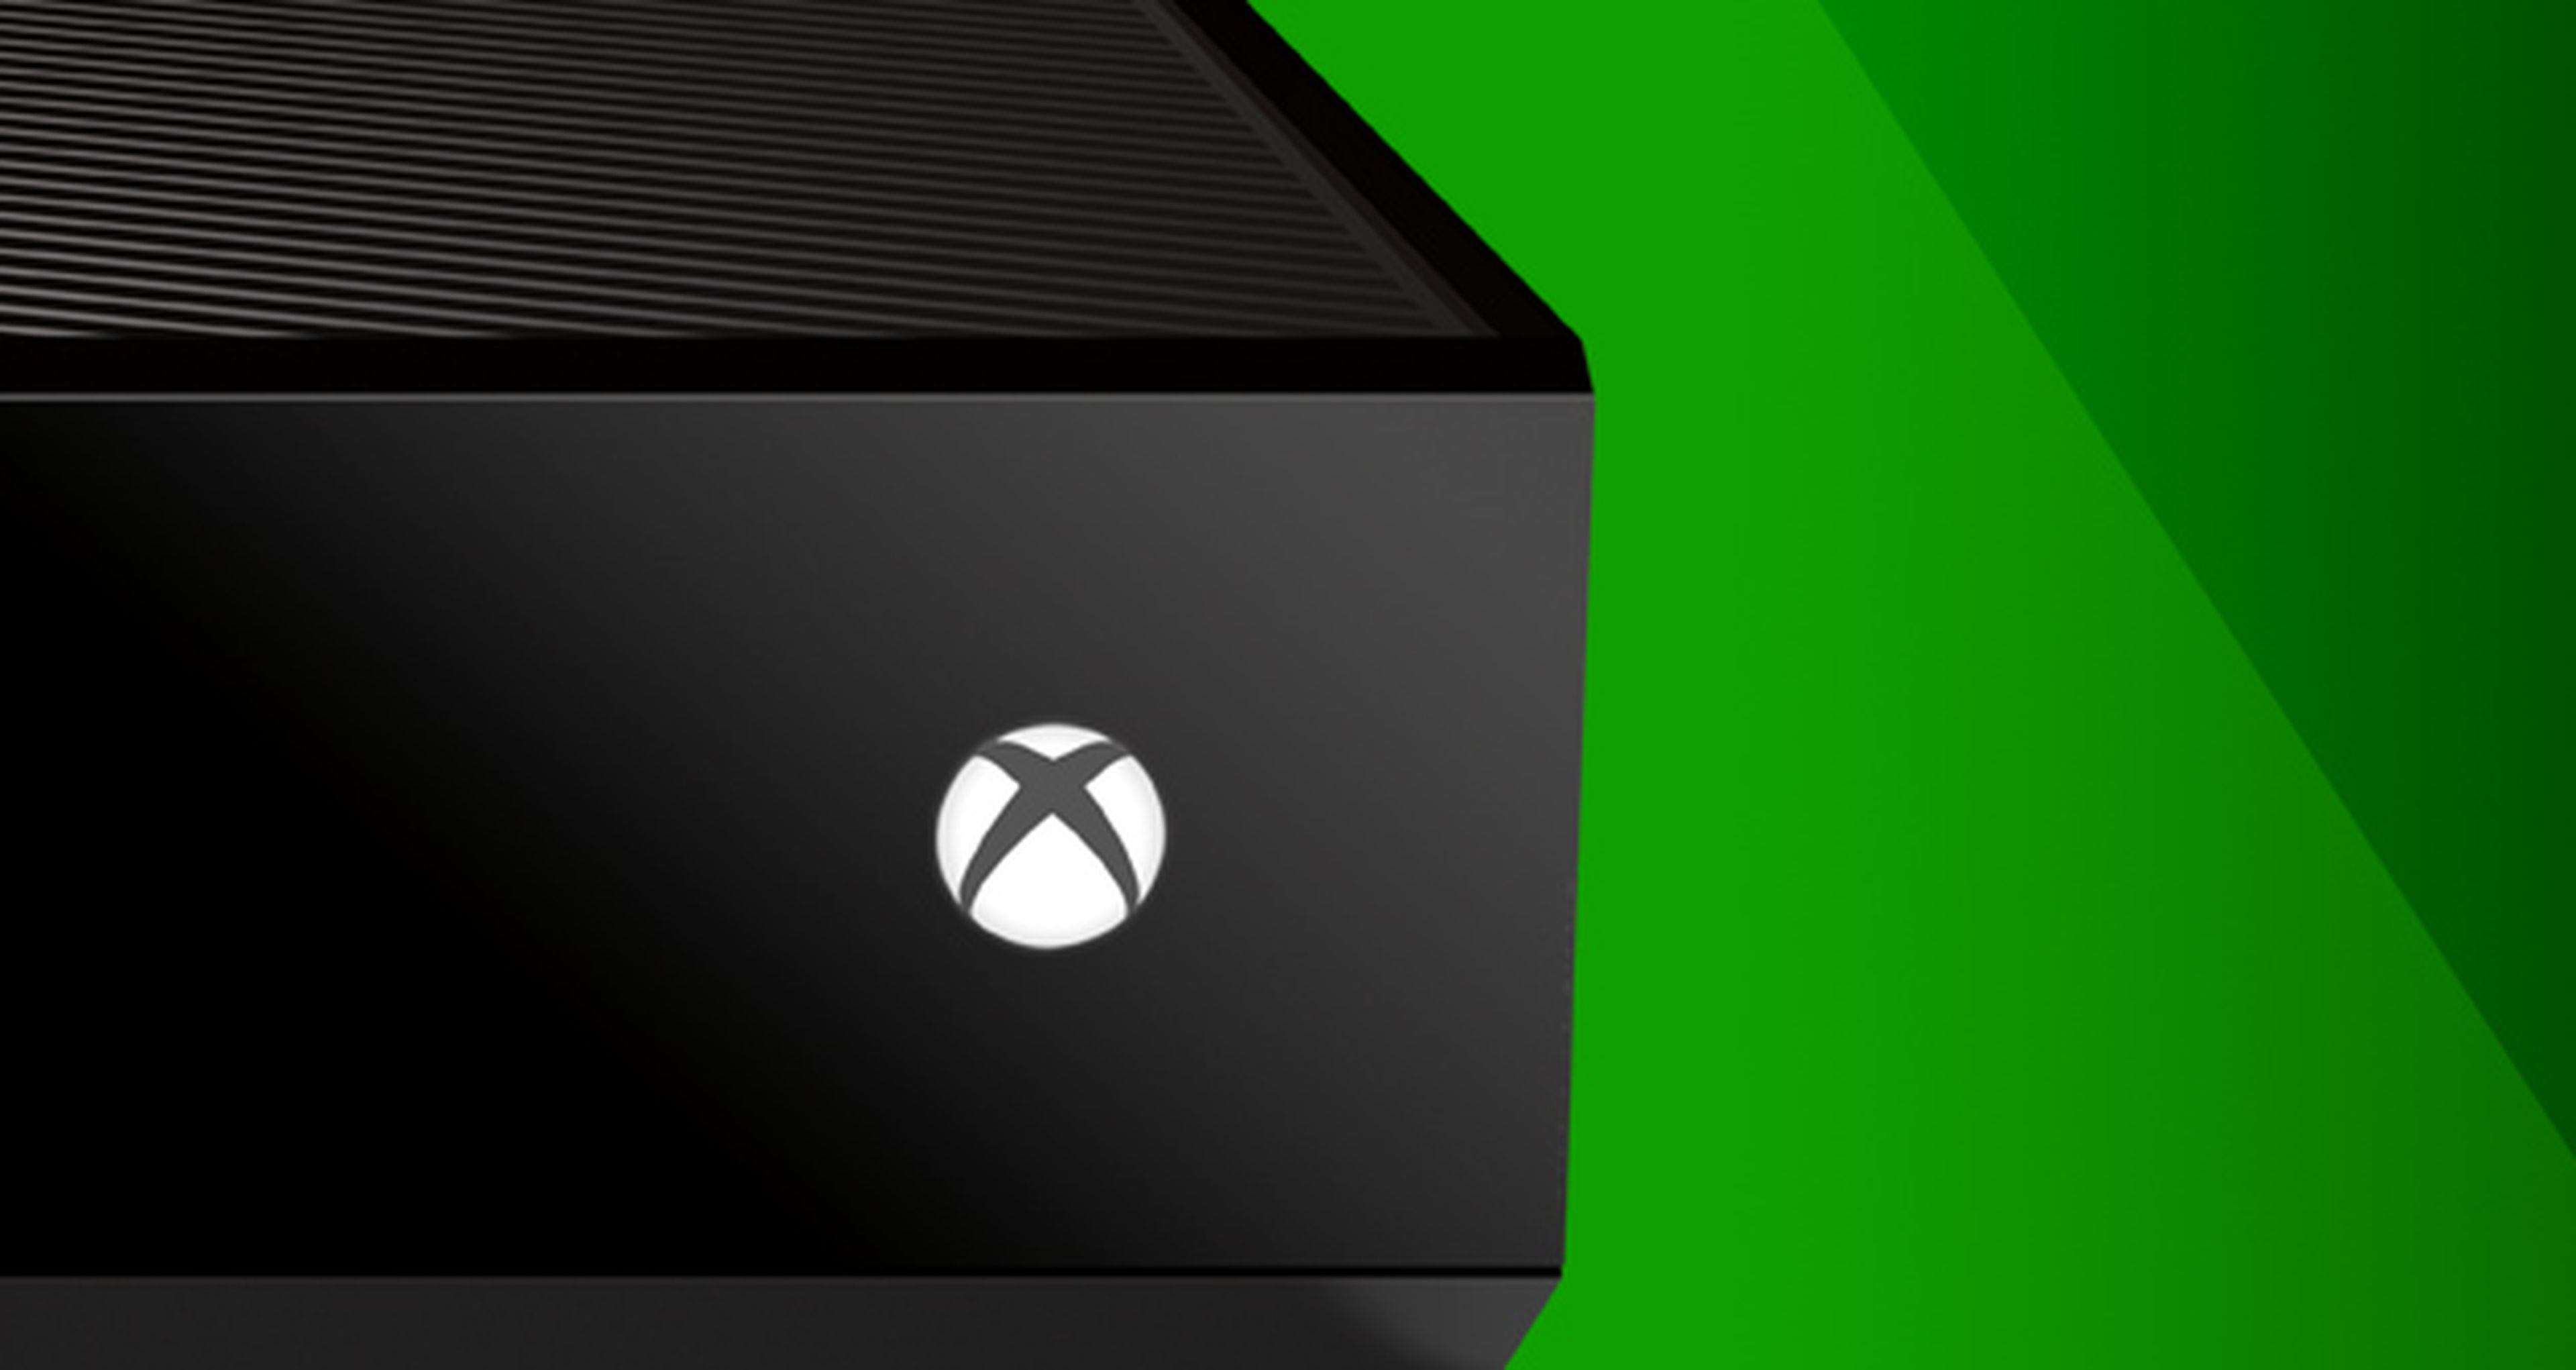 Firman para que Xbox One vuelva a ser como antes